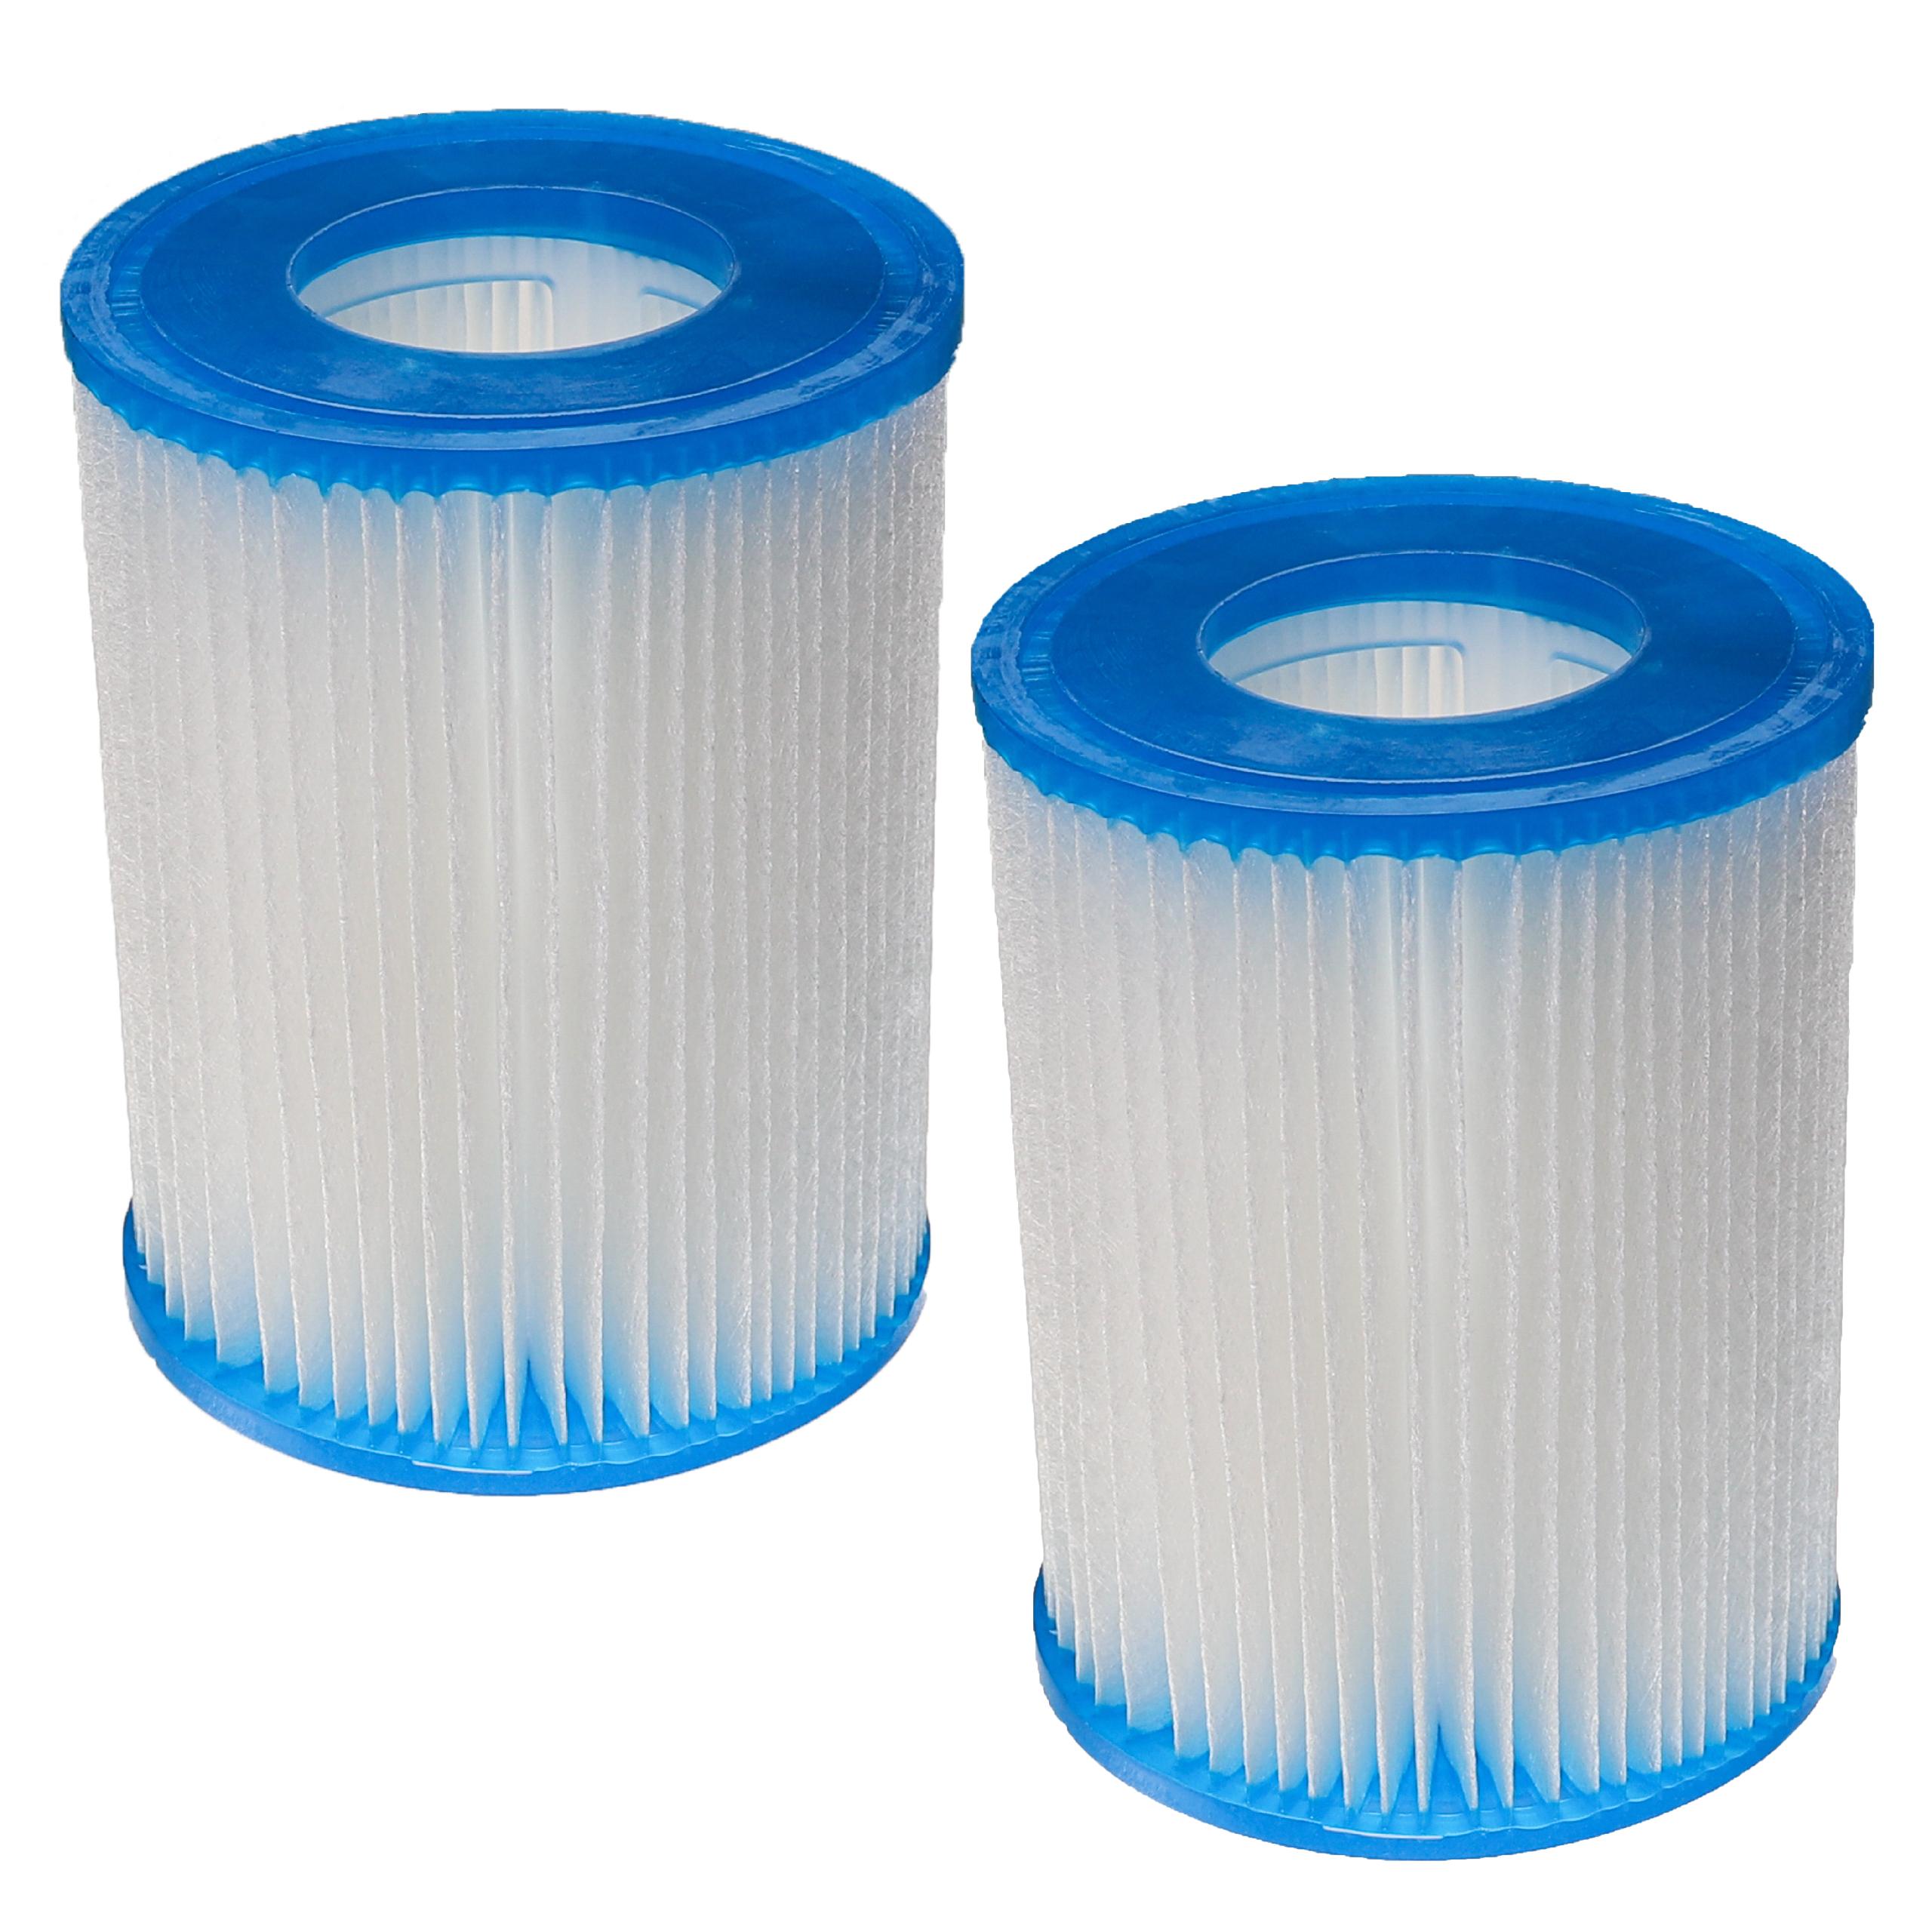 2x Wasserfilter als Ersatz für Bestway FD2137, Typ II für Bestway Swimmingpool & Filterpumpe - Filterkartusche